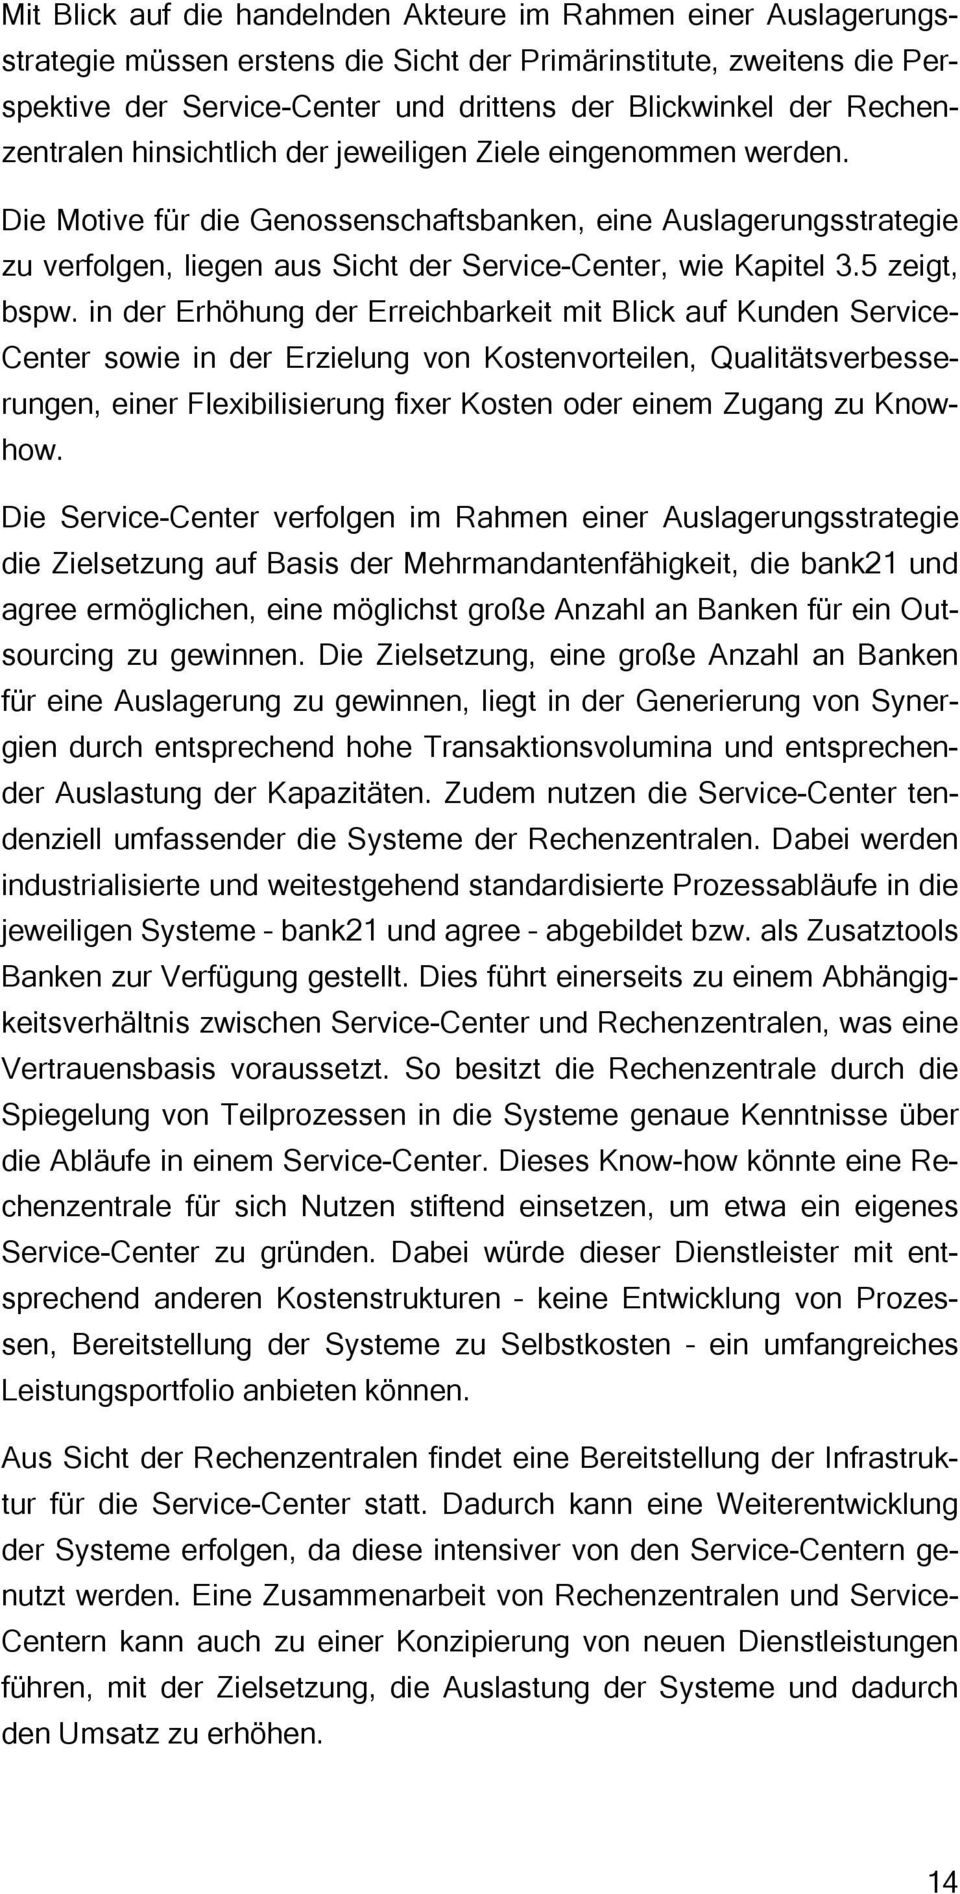 Die Motive für die Genossenschaftsbanken, eine Auslagerungsstrategie zu verfolgen, liegen aus Sicht der Service-Center, wie Kapitel 3.5 zeigt, bspw.